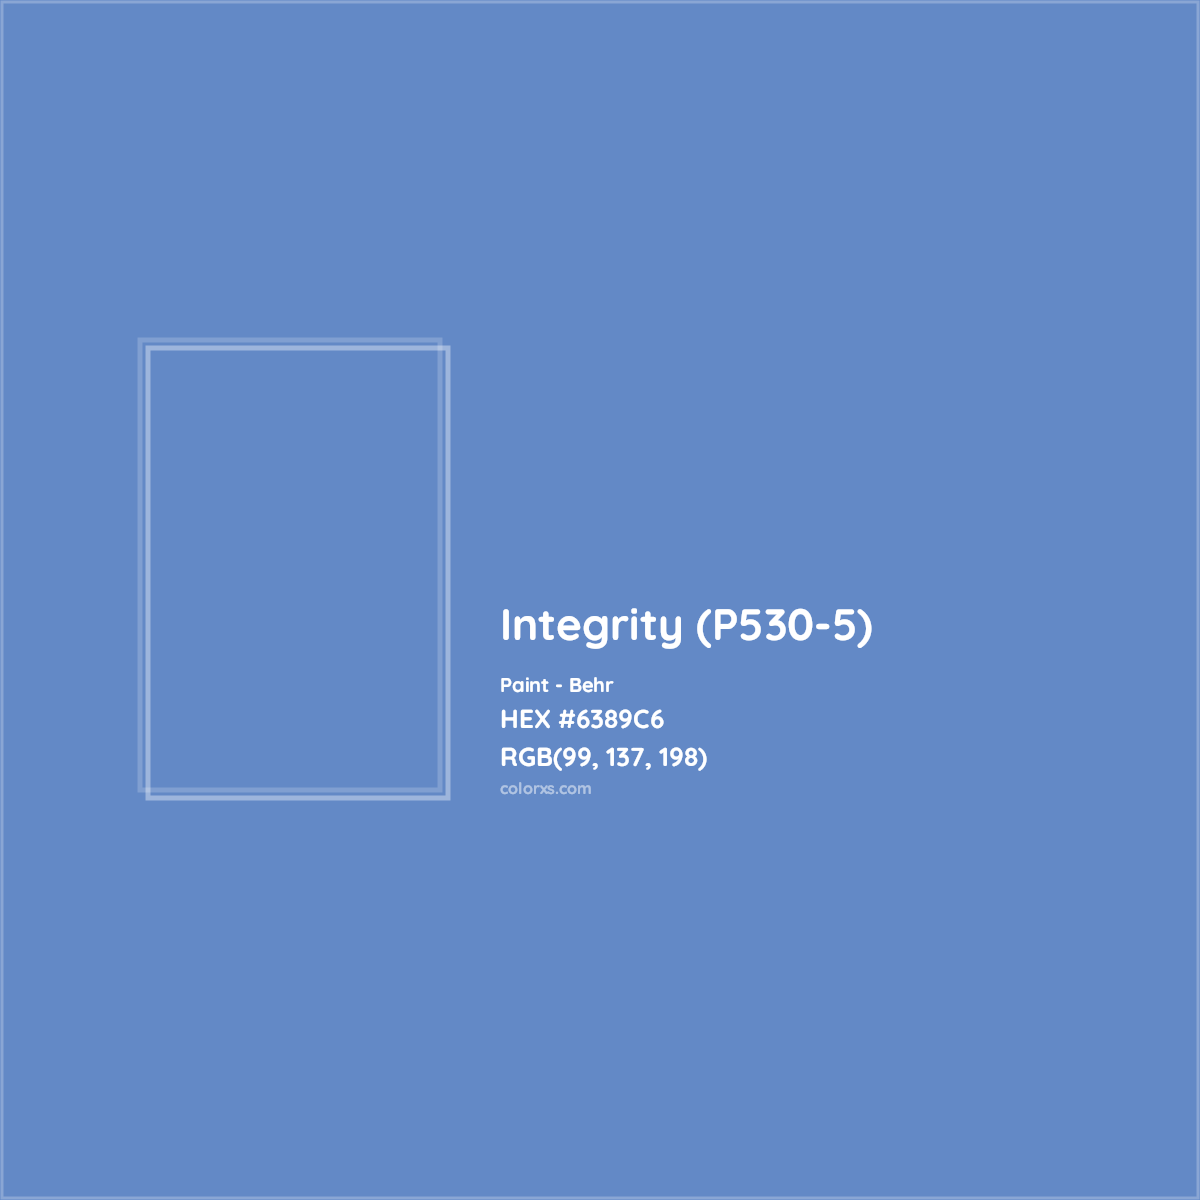 HEX #6389C6 Integrity (P530-5) Paint Behr - Color Code